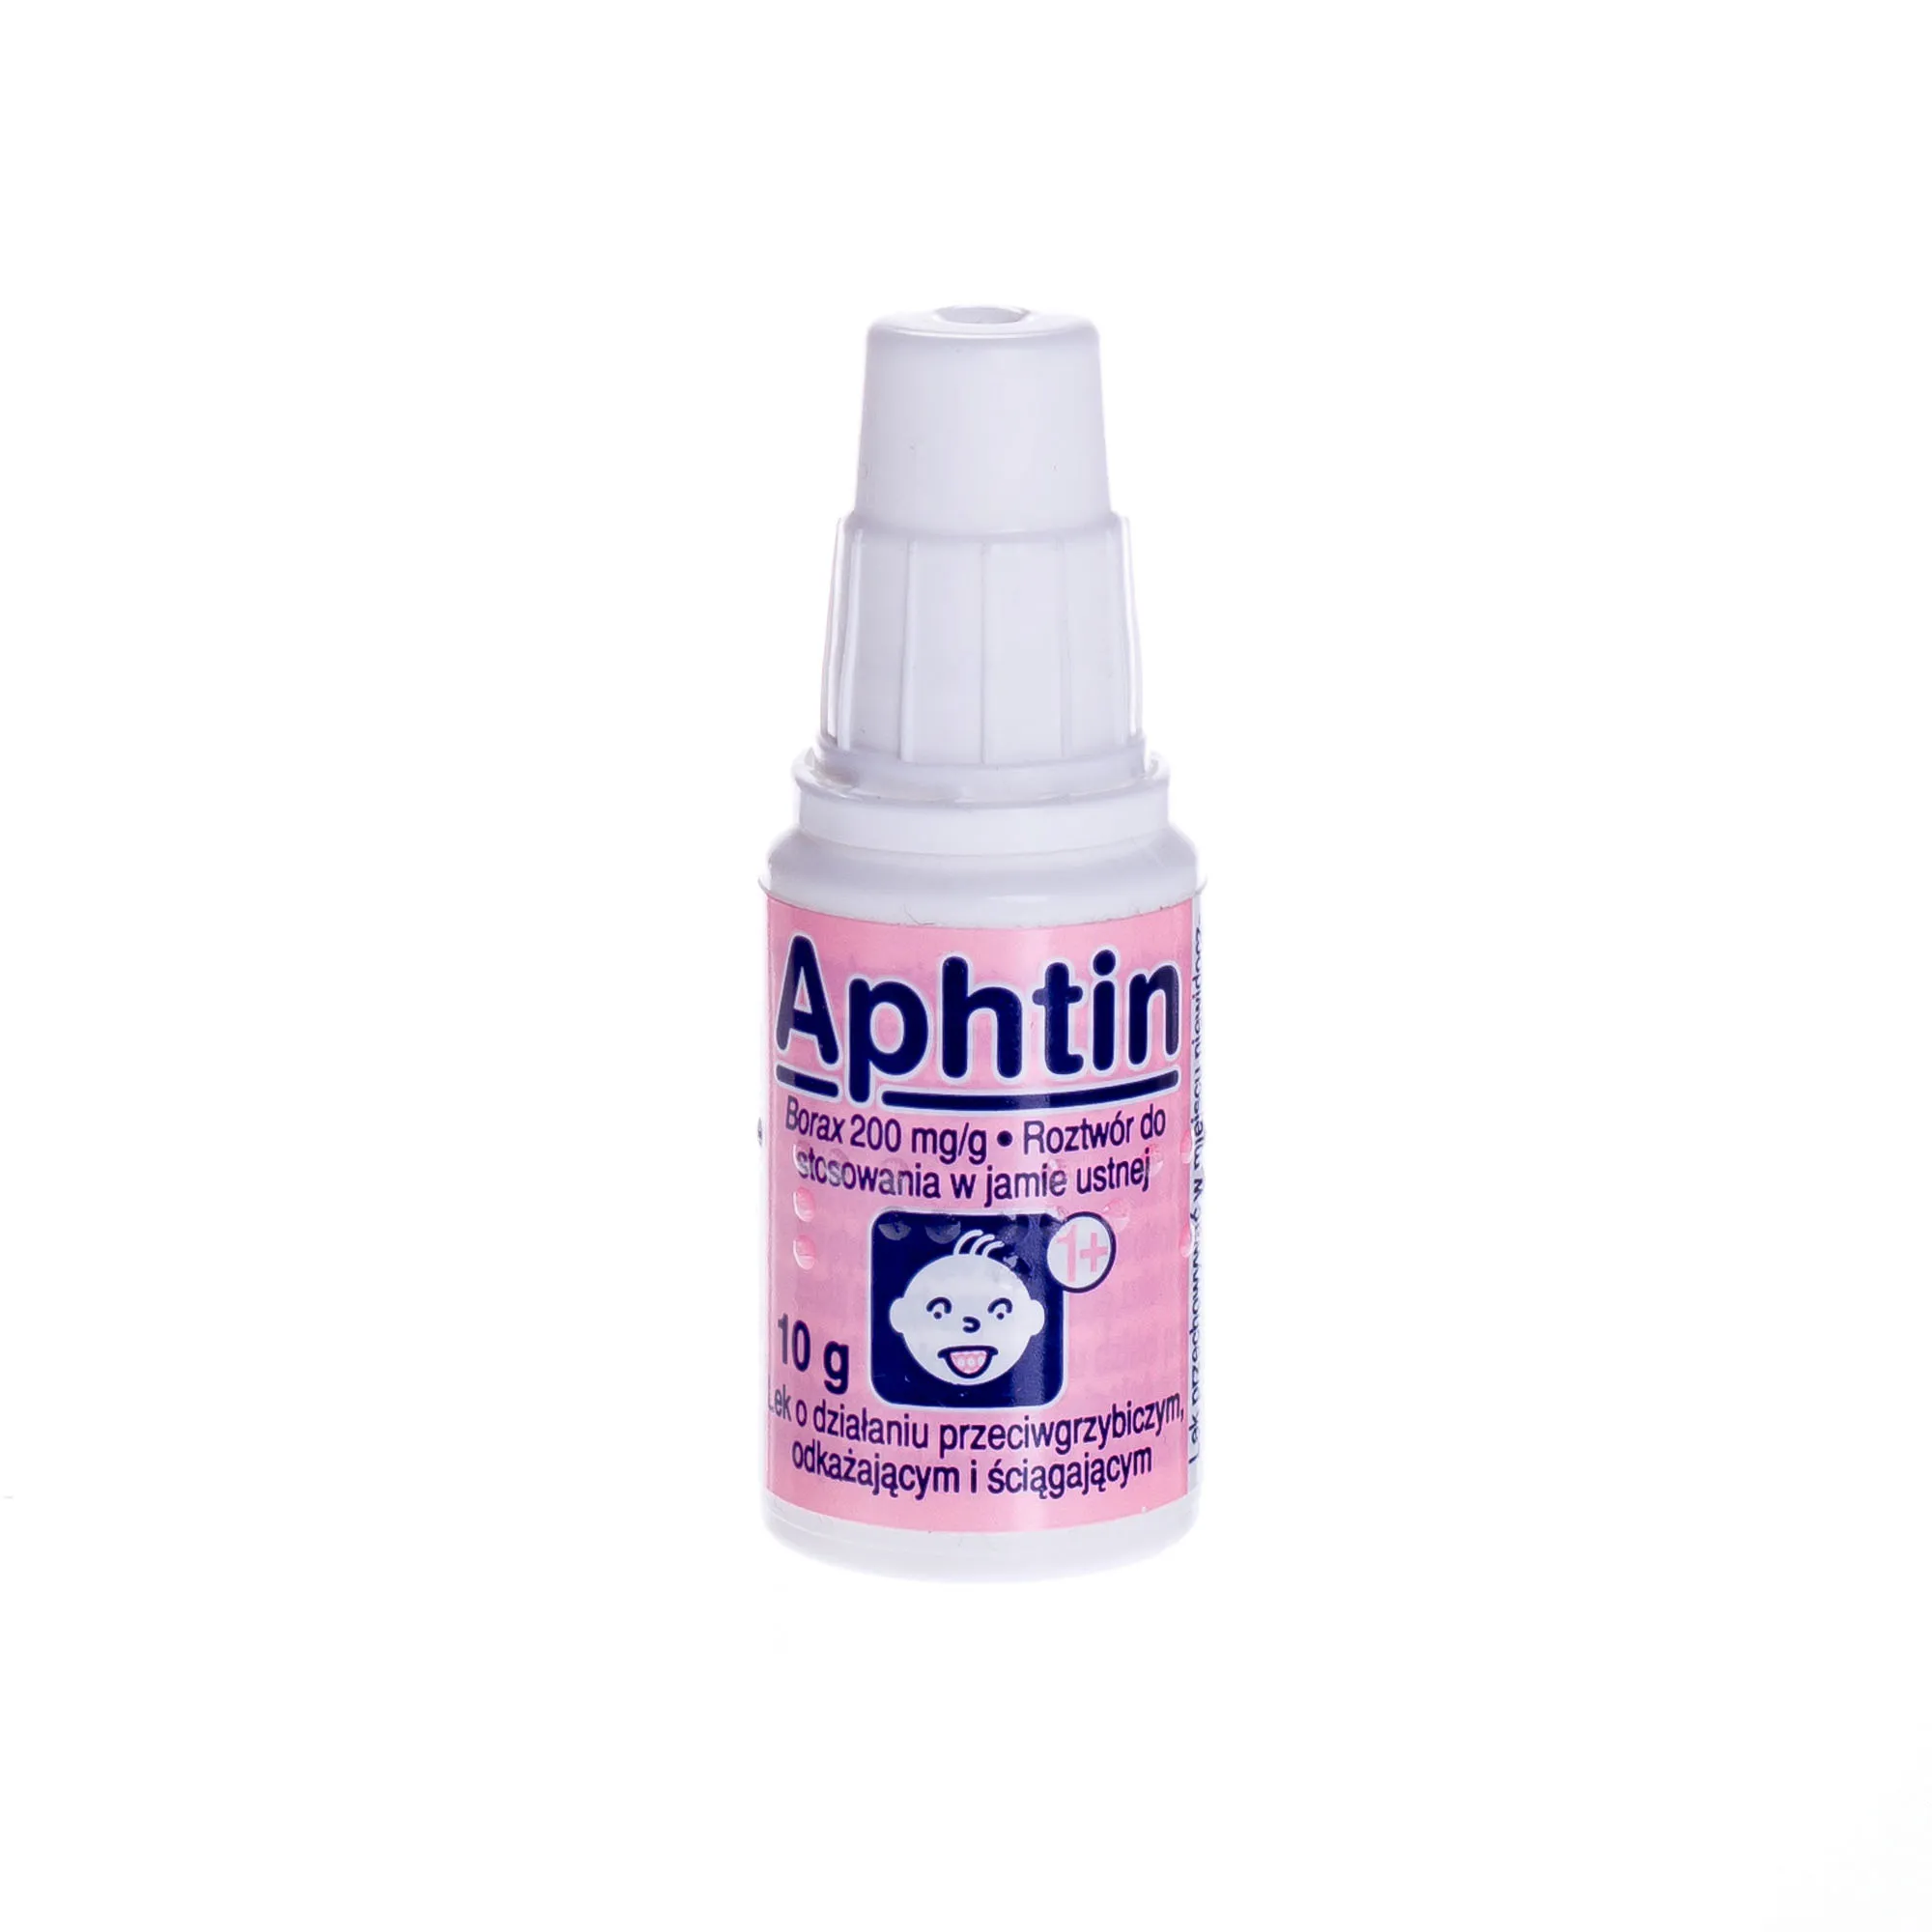 Aphtin 200 mg/g, roztwór 10 g